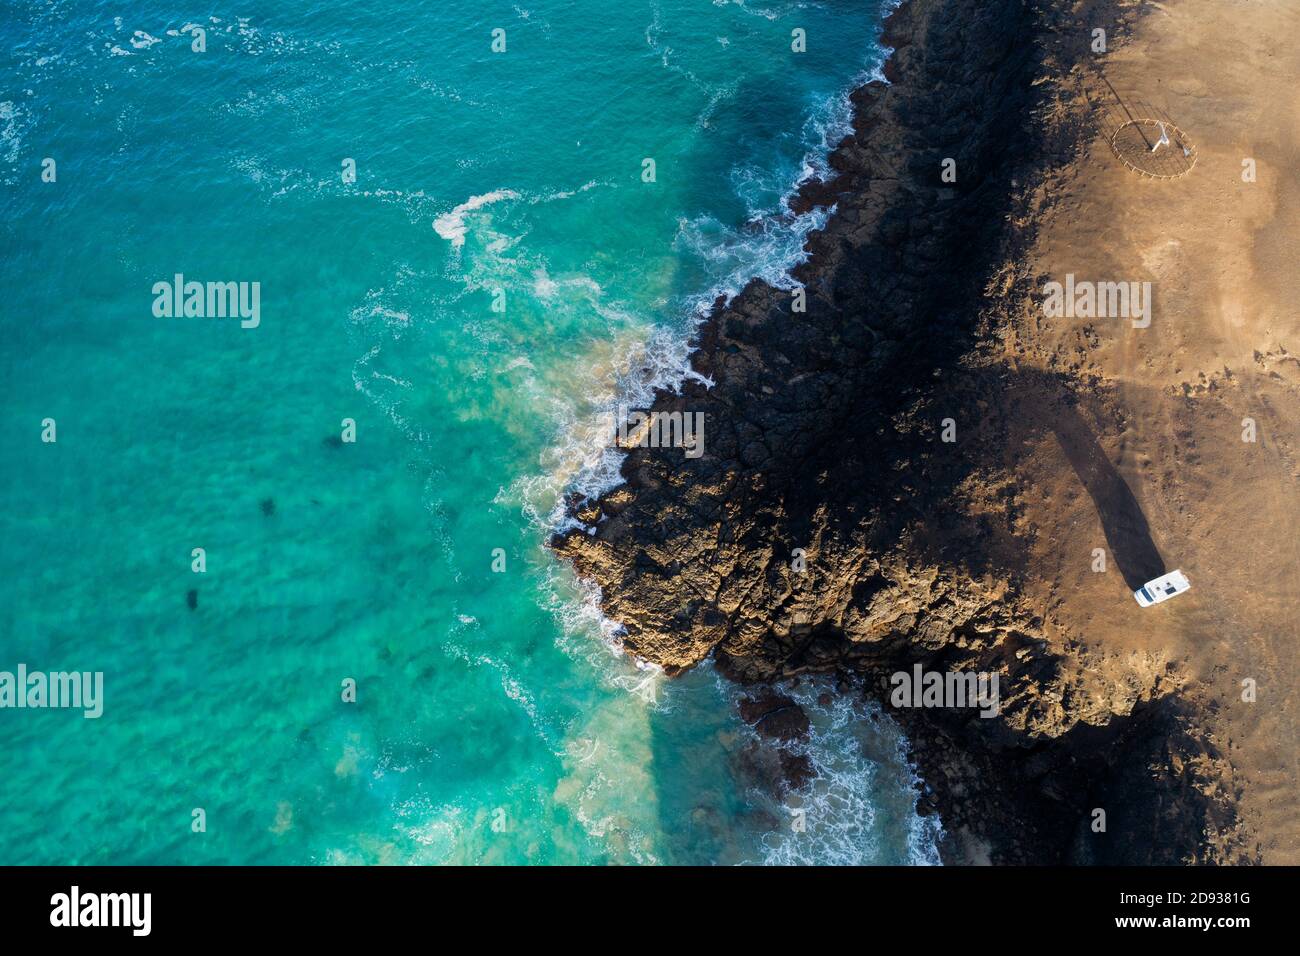 Europa, España, Islas Canarias, Fuerteventura, El Cotillo, vista aérea Foto de stock